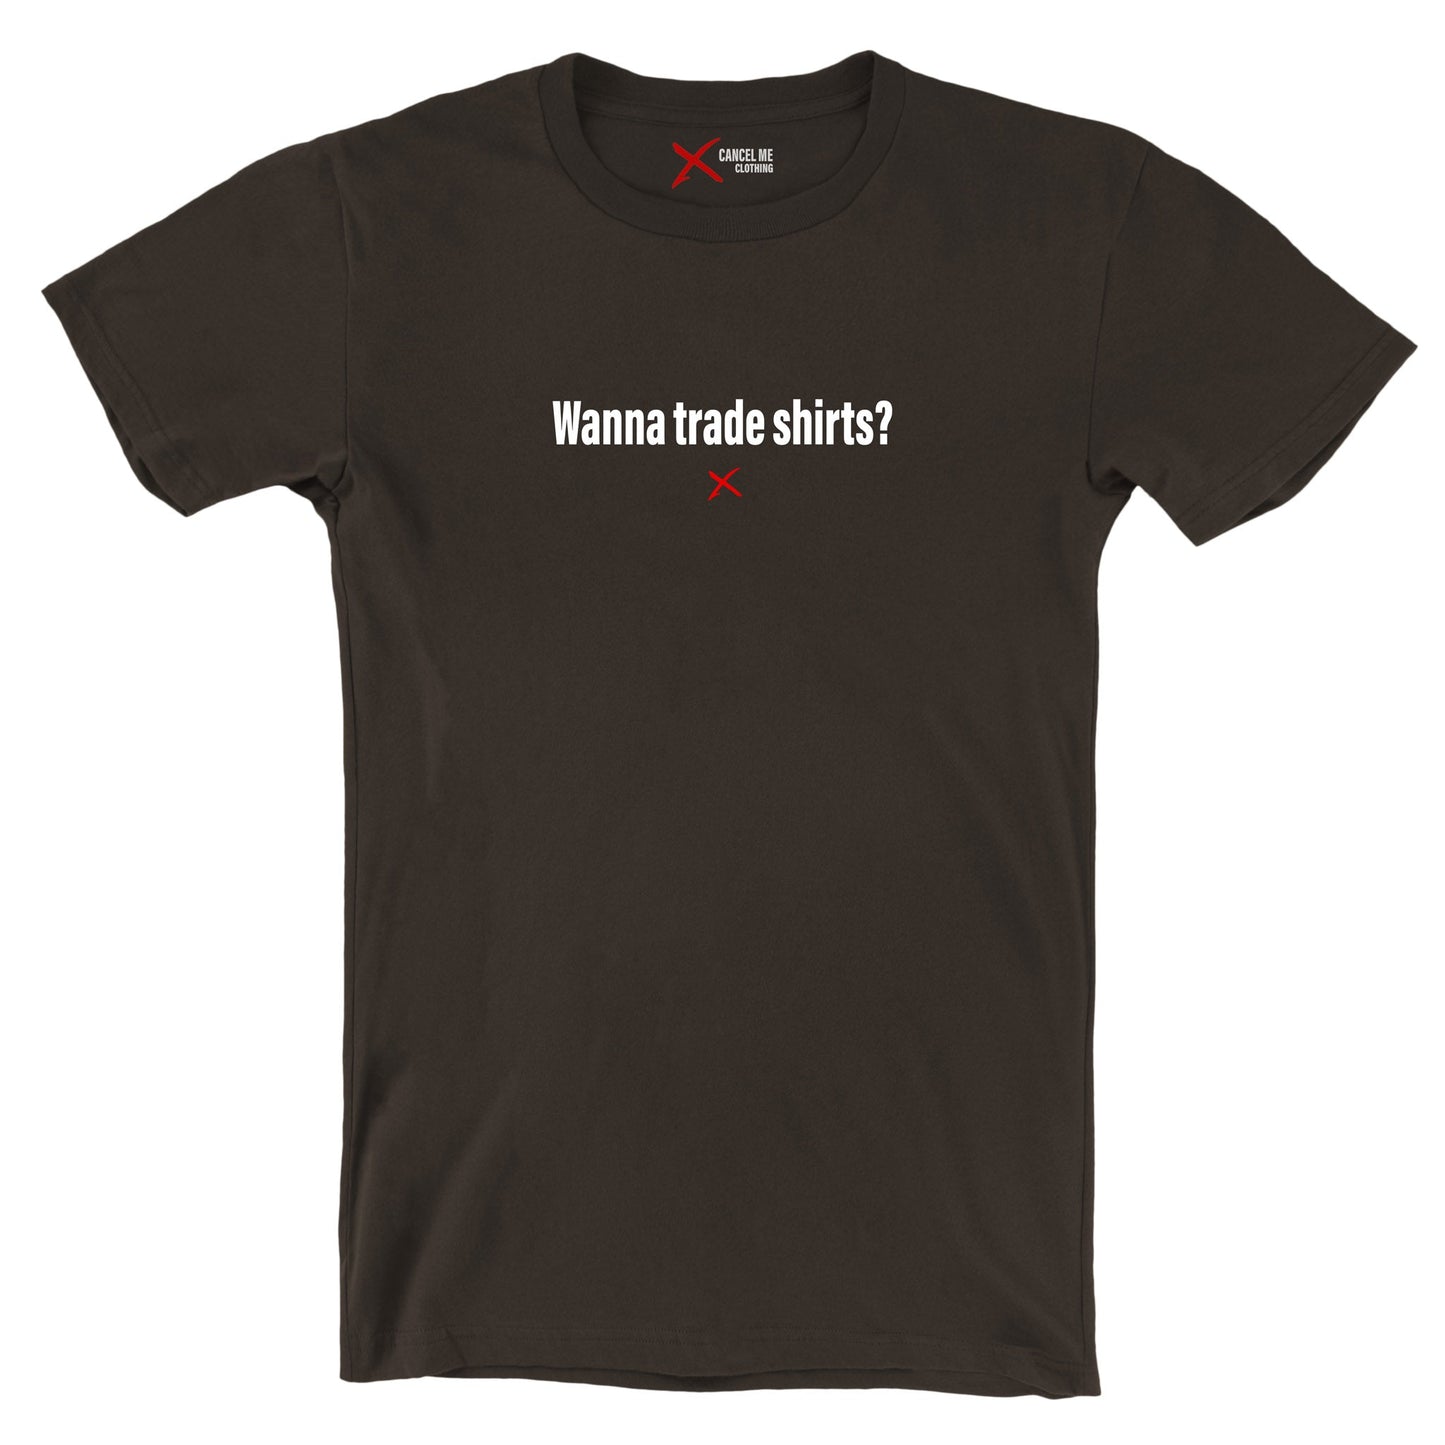 Wanna trade shirts? - Shirt